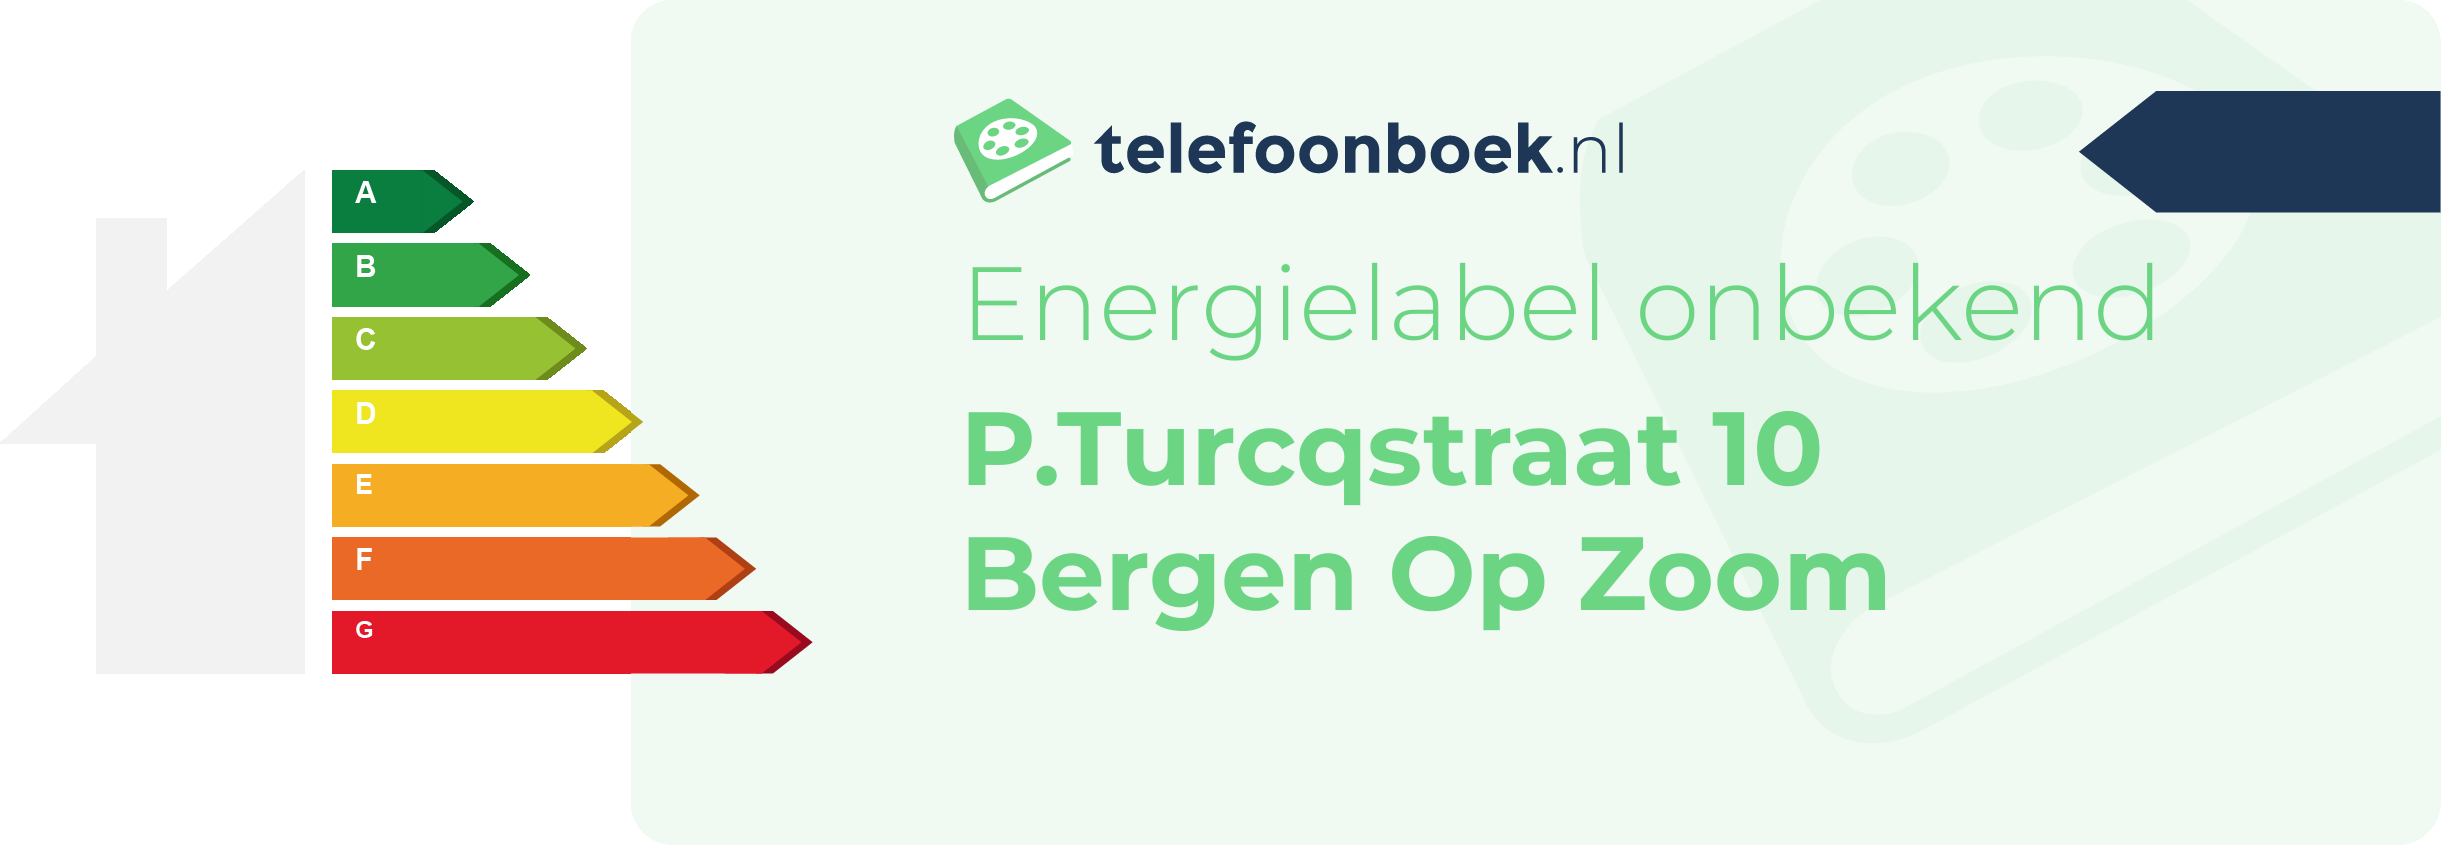 Energielabel P.Turcqstraat 10 Bergen Op Zoom